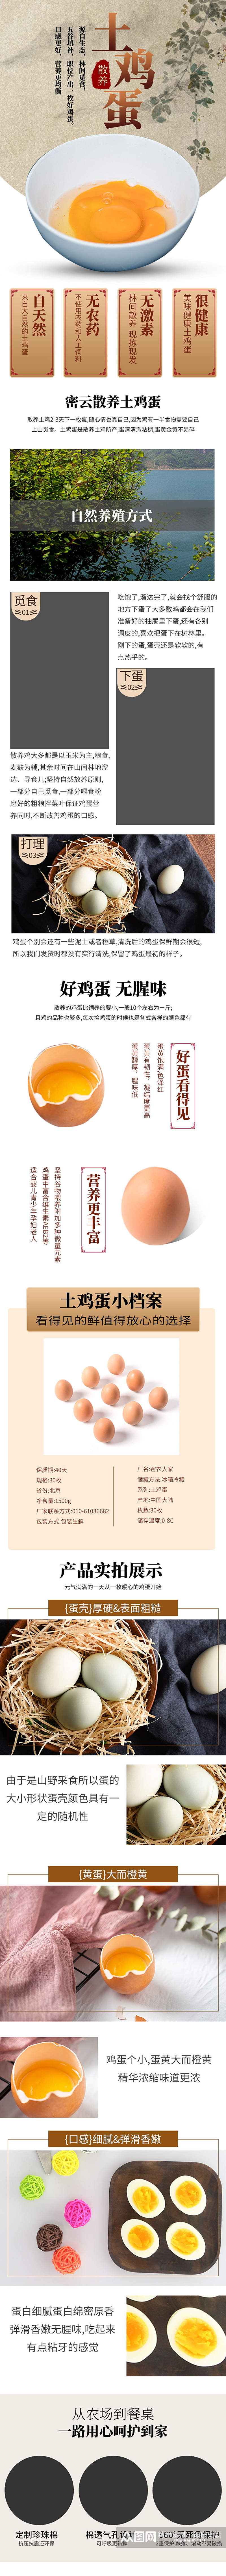 天猫中国风风格土鸡蛋详情页素材